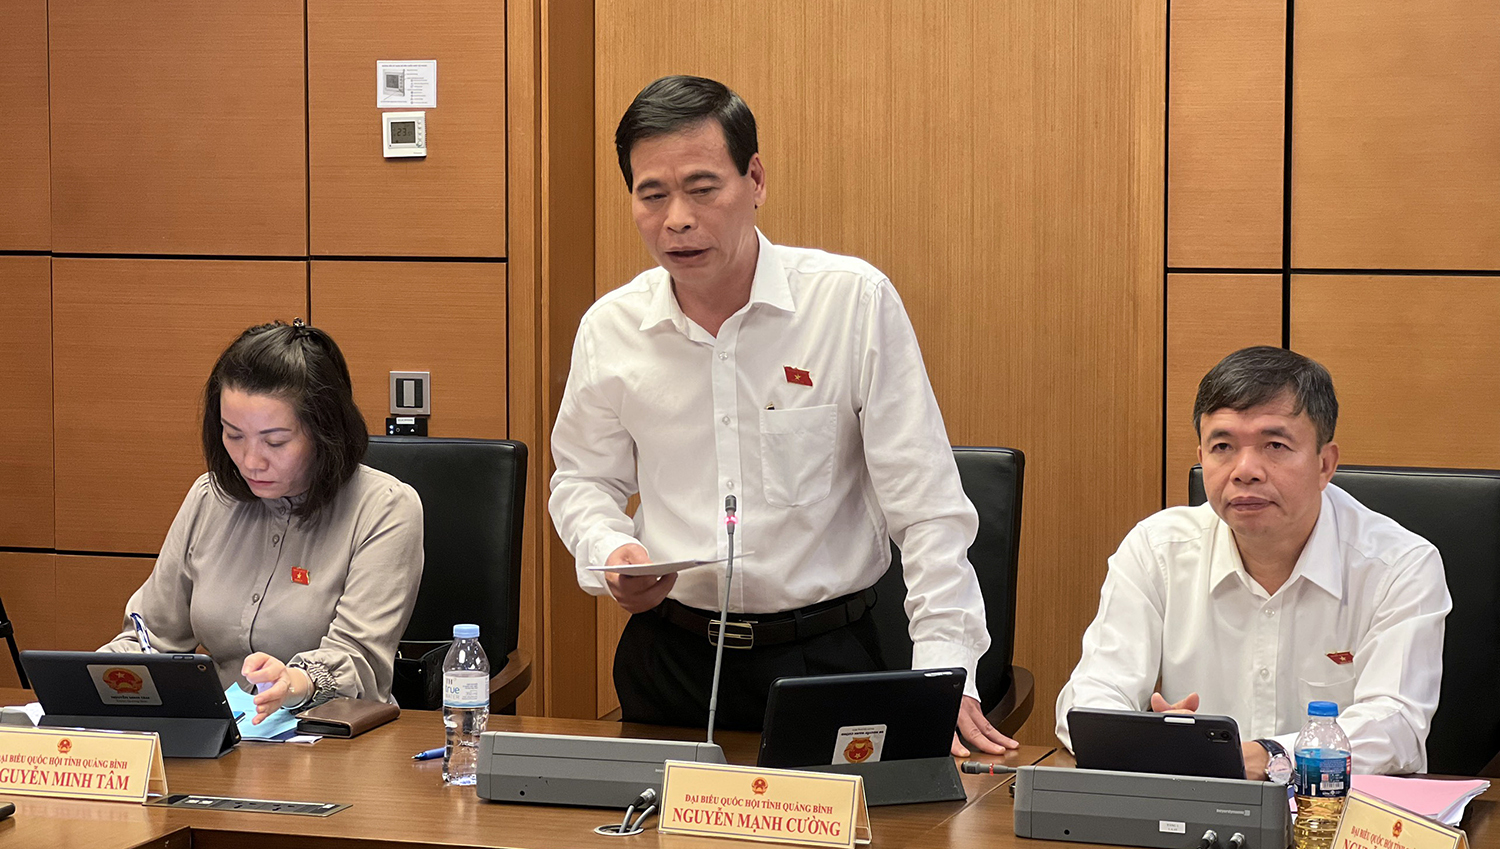  Đại biểu Nguyễn Mạnh Cường thảo luận về nội dung rà soát văn bản quy phạm pháp luật